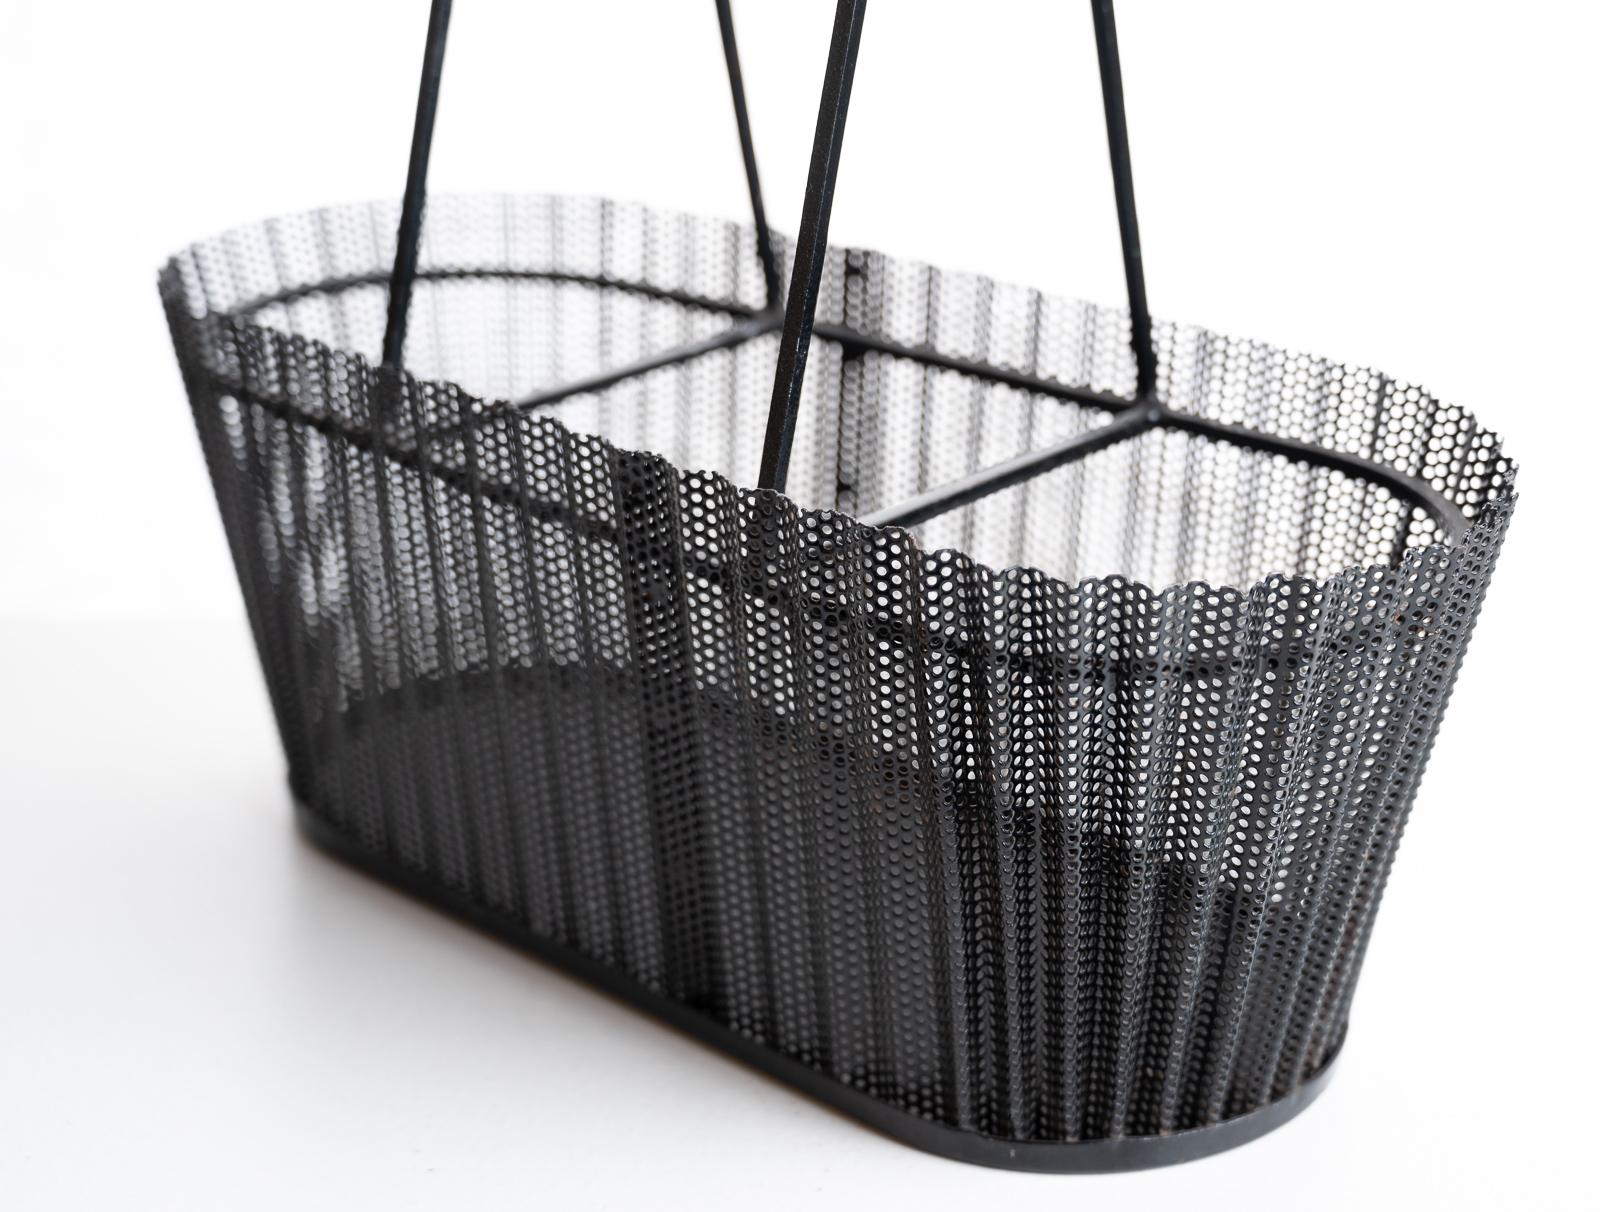 Rare Metal Basket with Wicker Handles by Mathieu Matégot 3